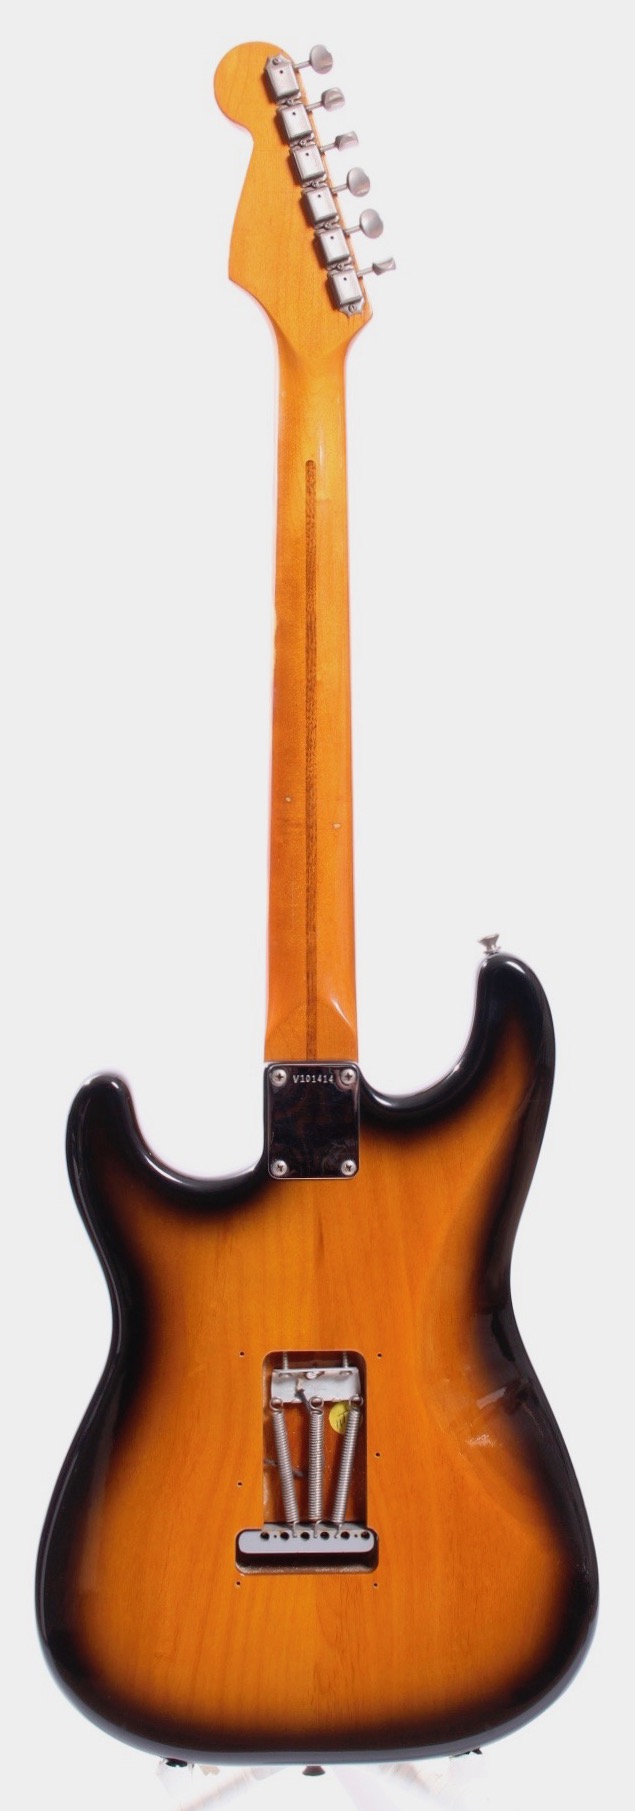 Fender Stratocaster American Vintage '57 Reissue 1997 Sunburst Guitar